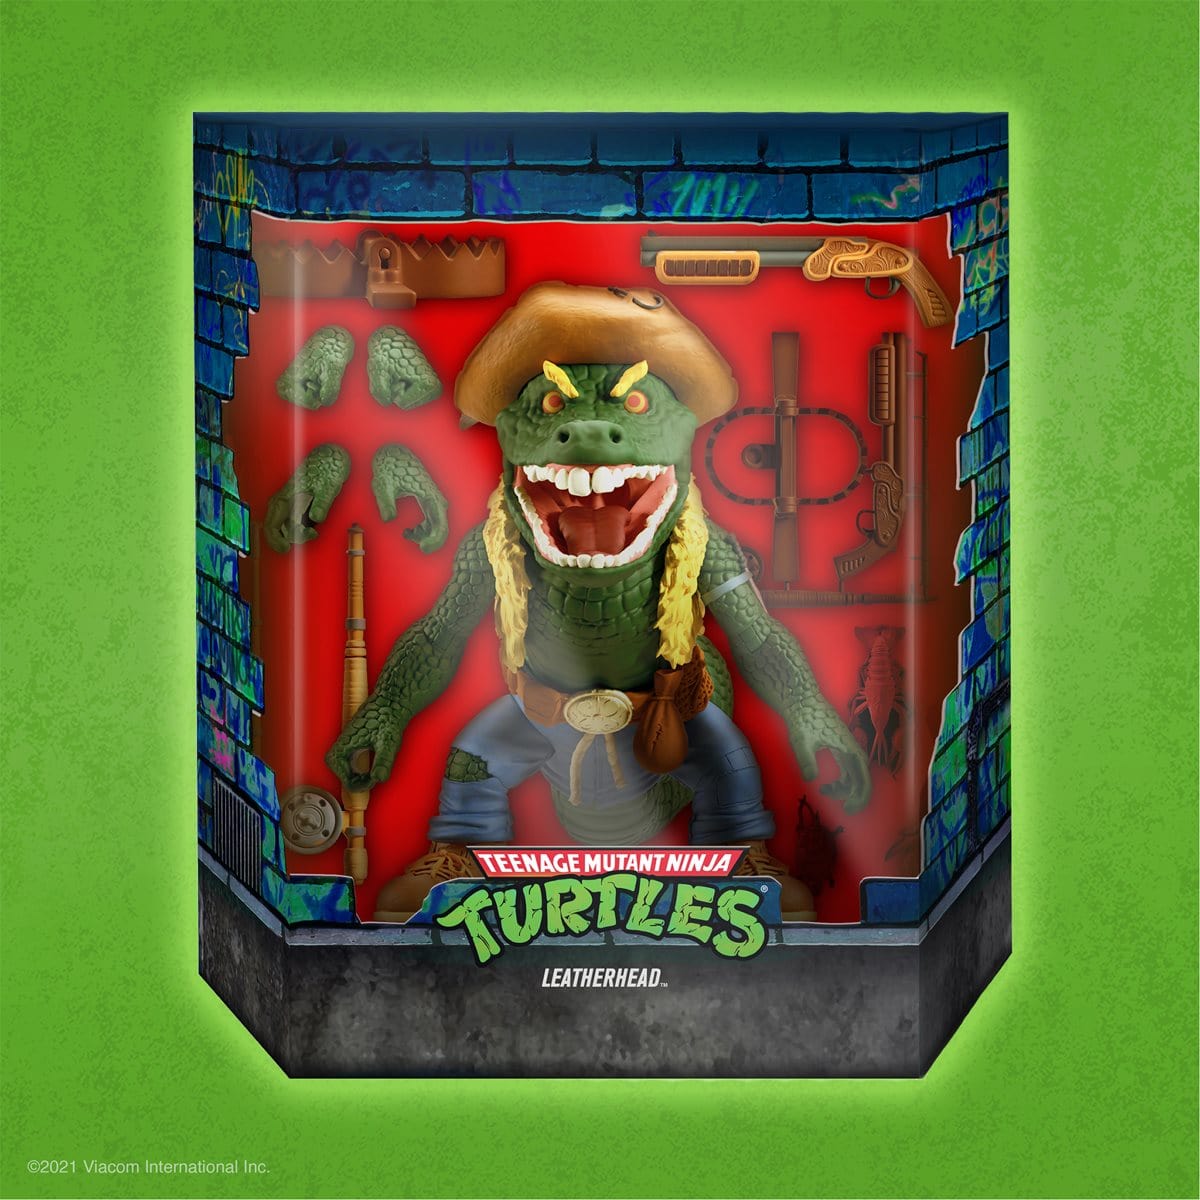 Teenage Mutant Ninja Turtles Ultimates Leatherhead 7-Inch Action Figure Pop-O-Loco